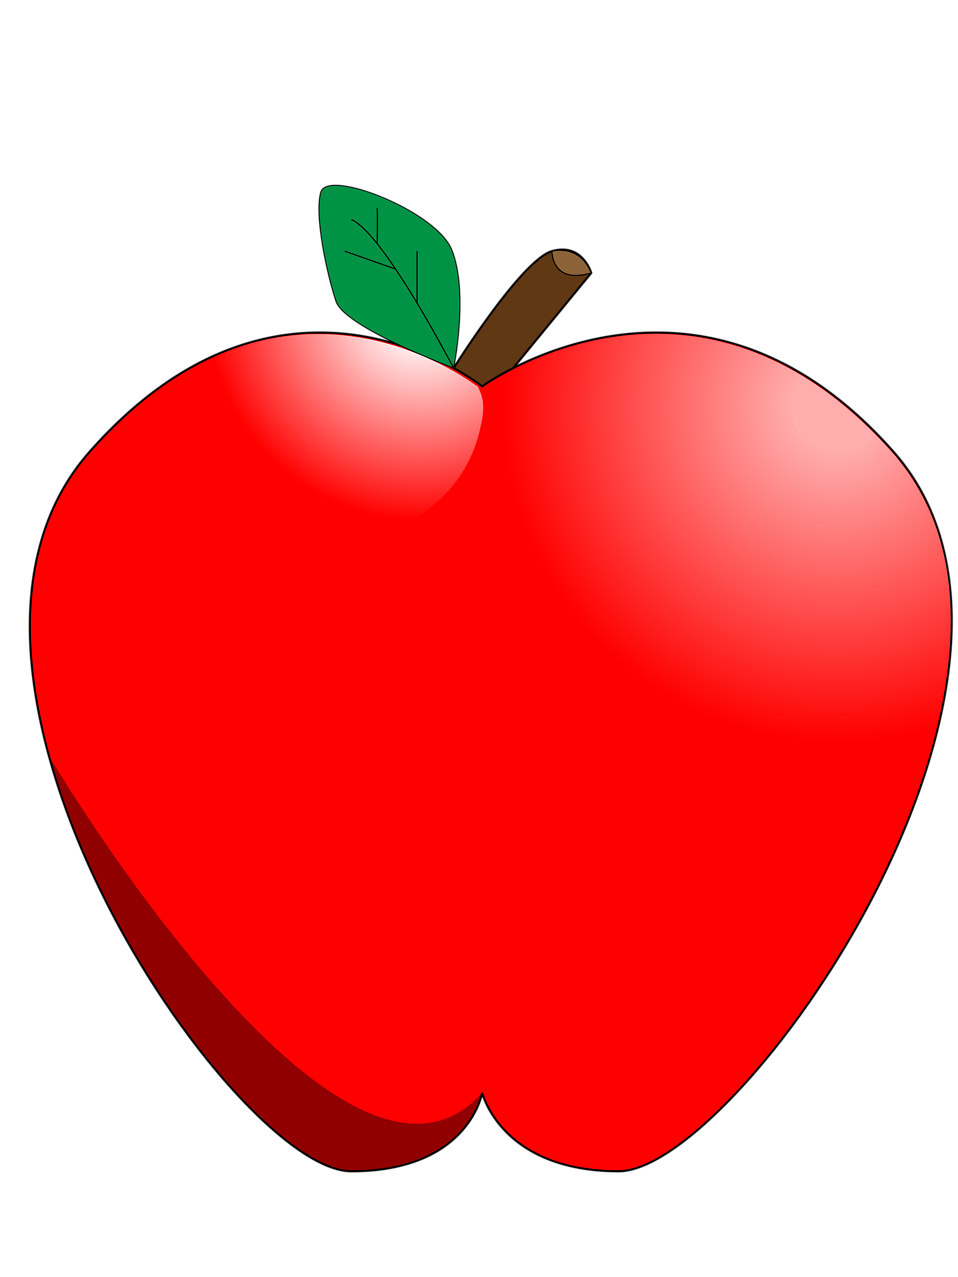 PNG transparente de la fruta de manzana